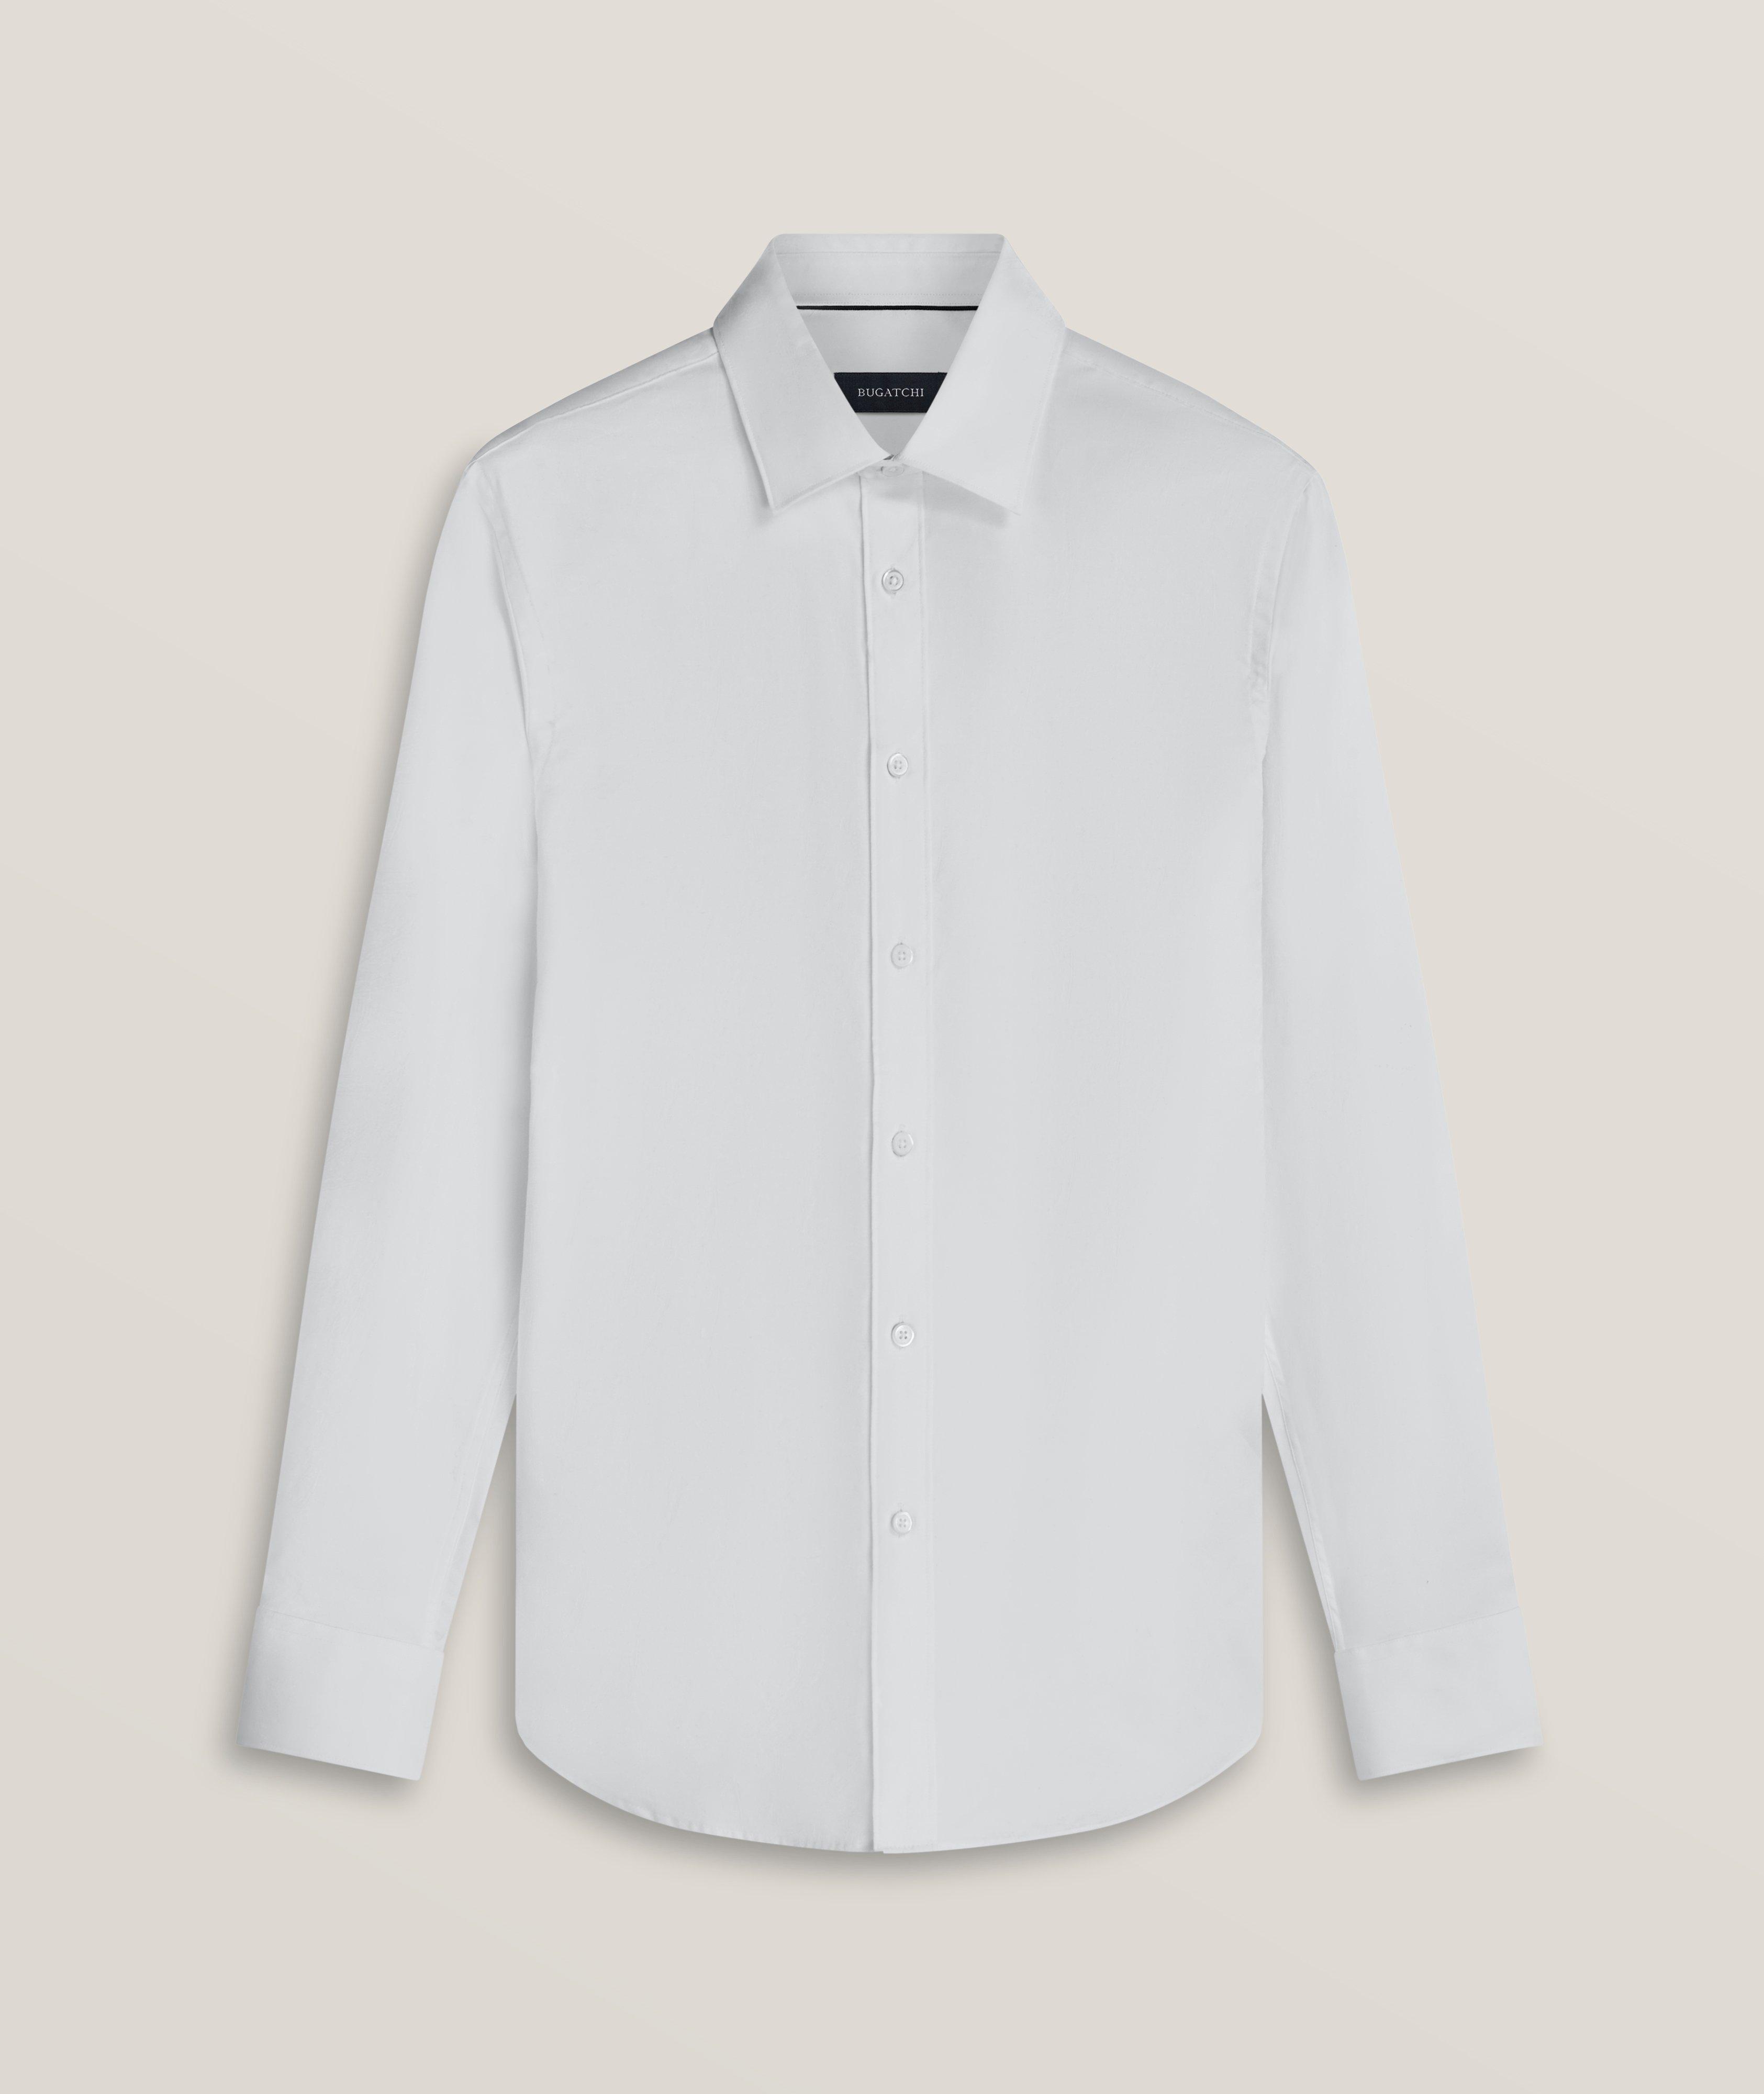 Julian Abstract Jacquard Cotton-Blend Sport Shirt image 0